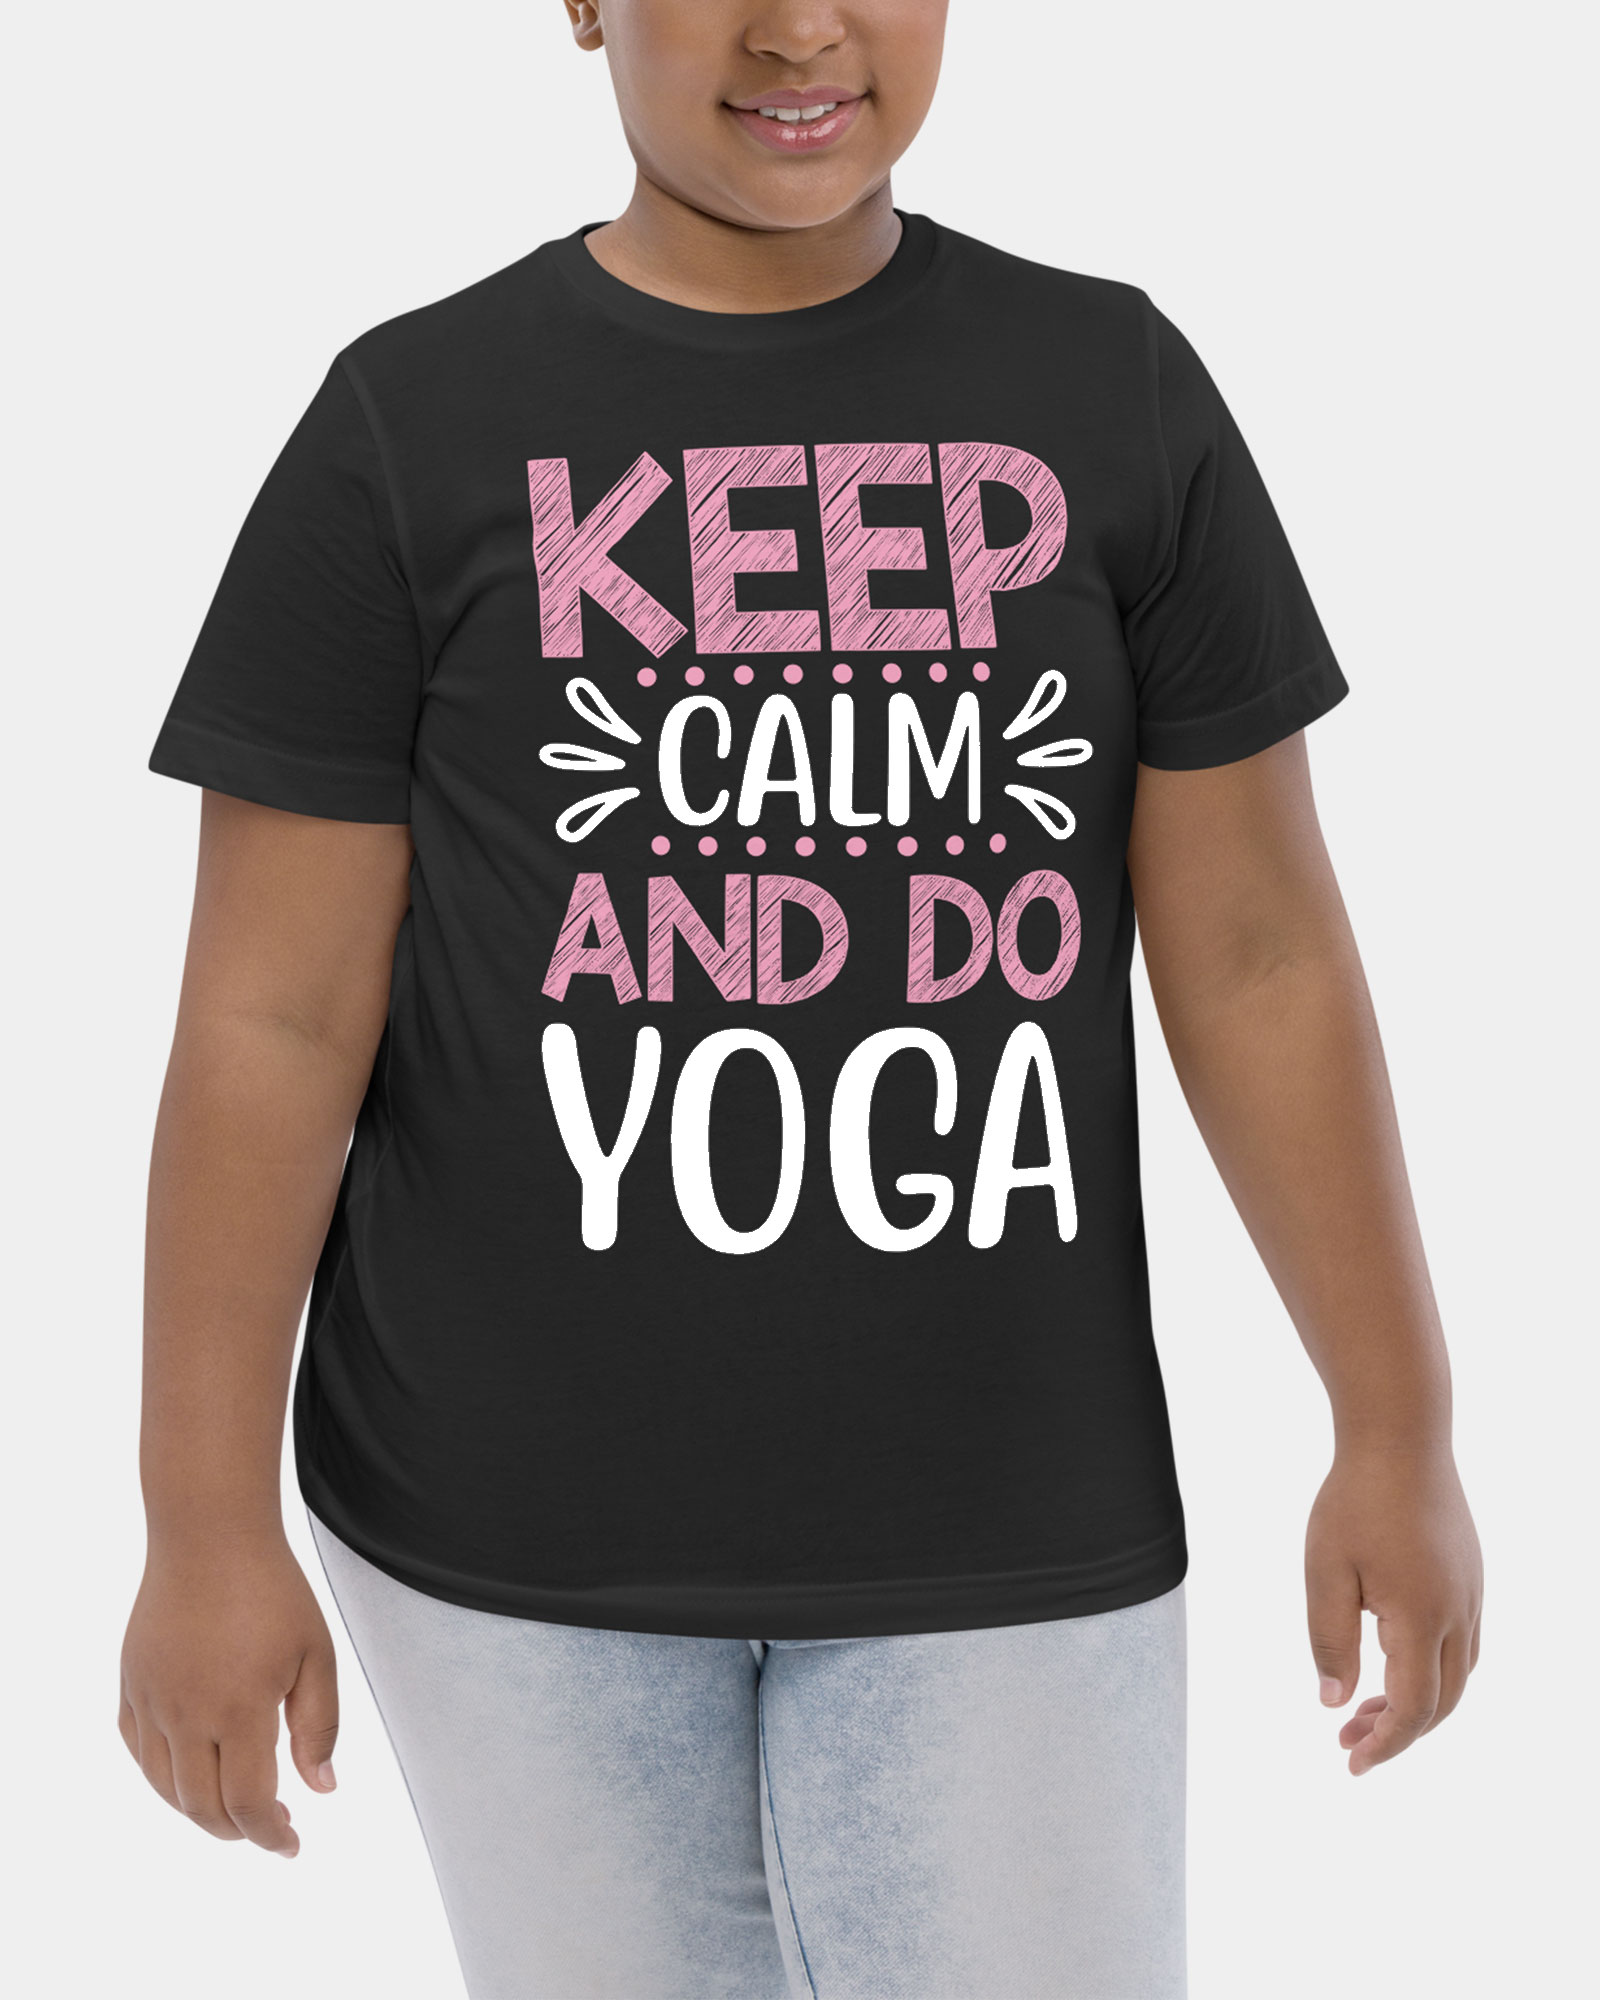 Keep calm and do yoga tshirt for girl